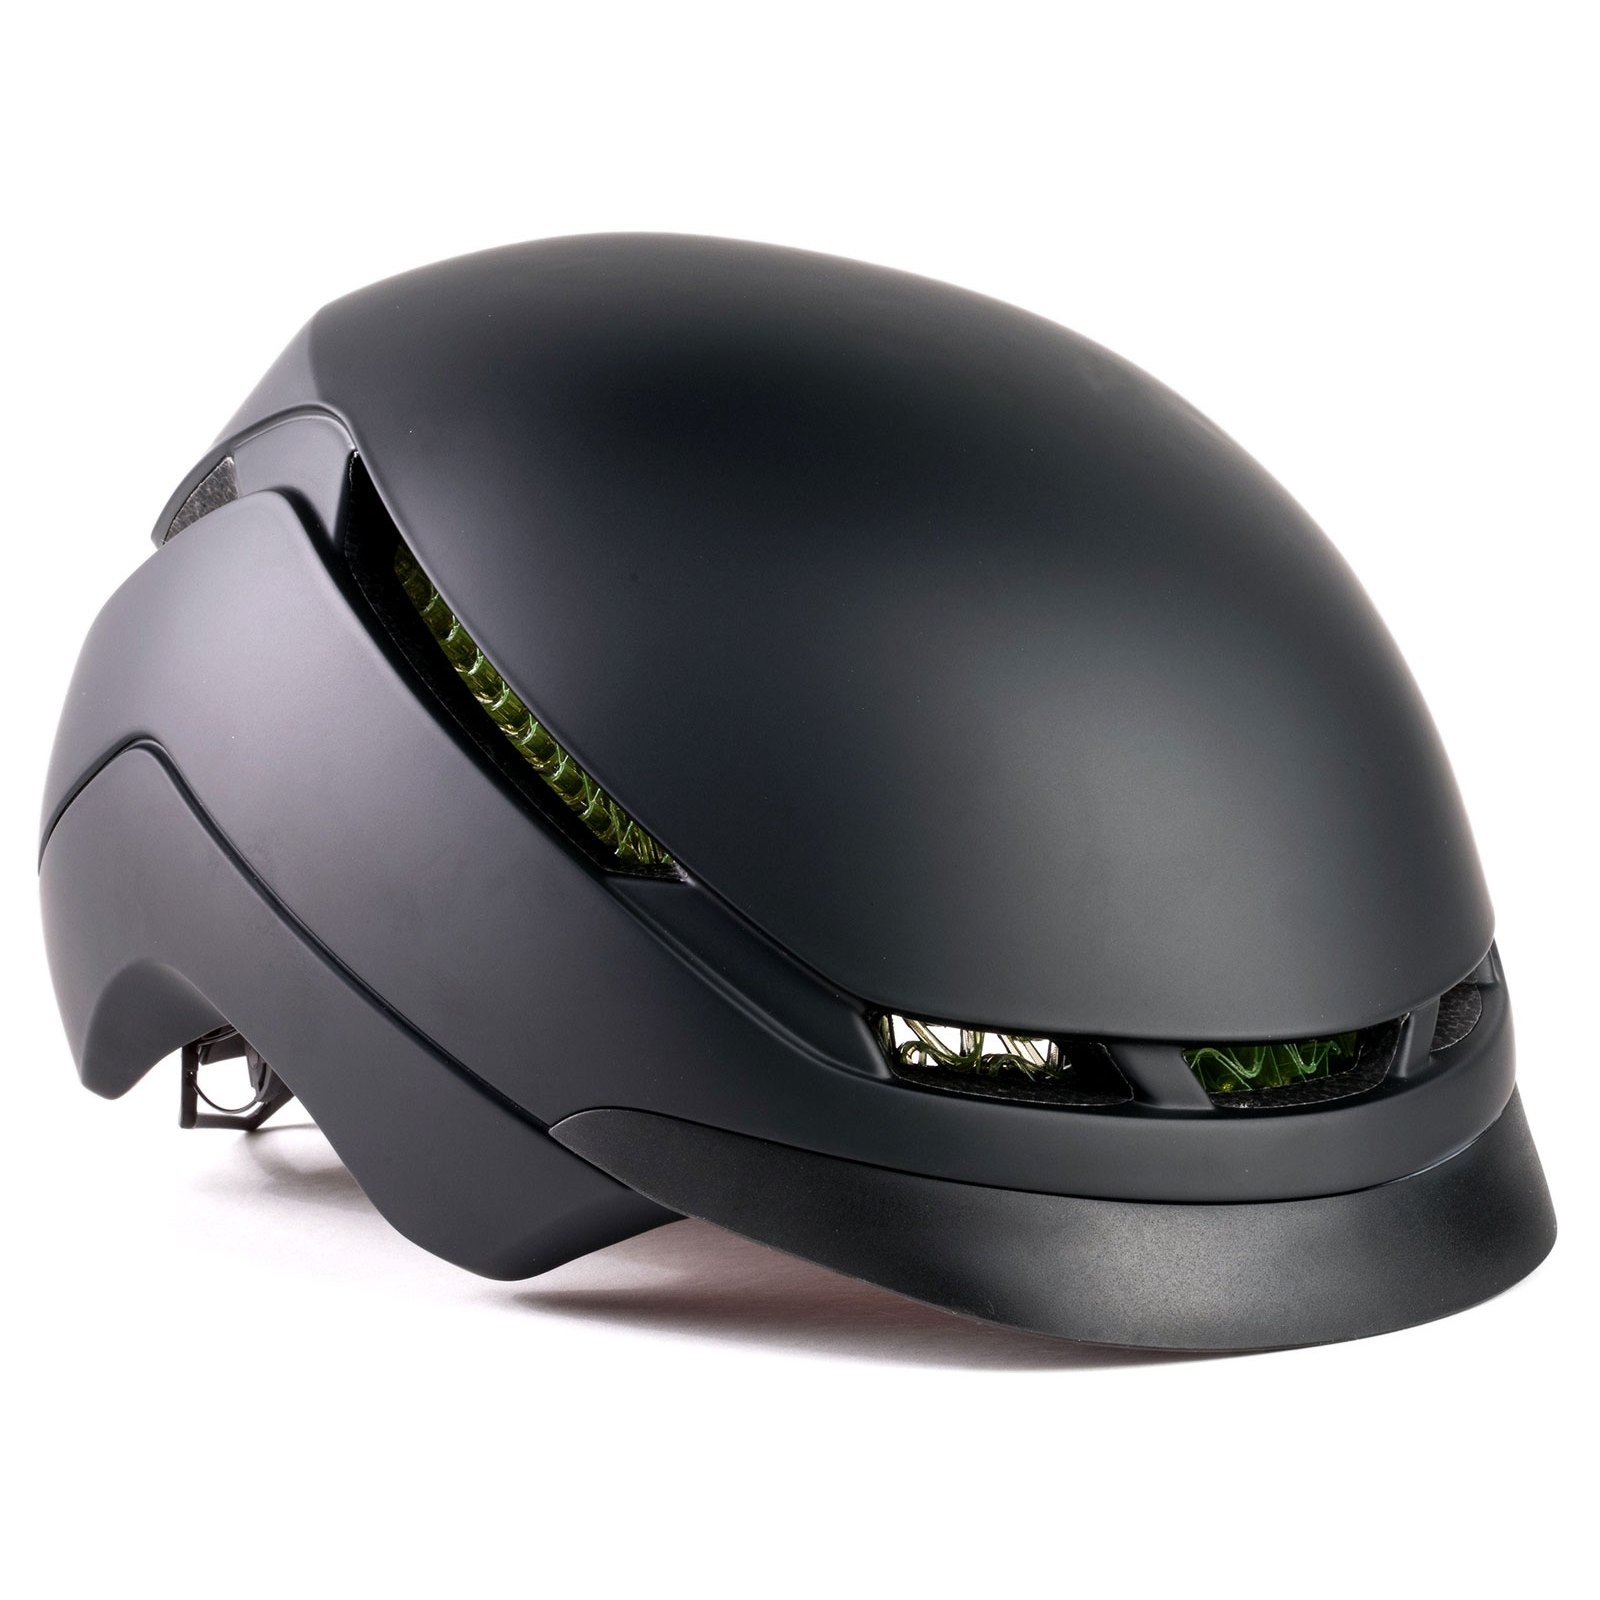 Produktbild von Bontrager Charge WaveCel Commuter E-Bike Helm - black